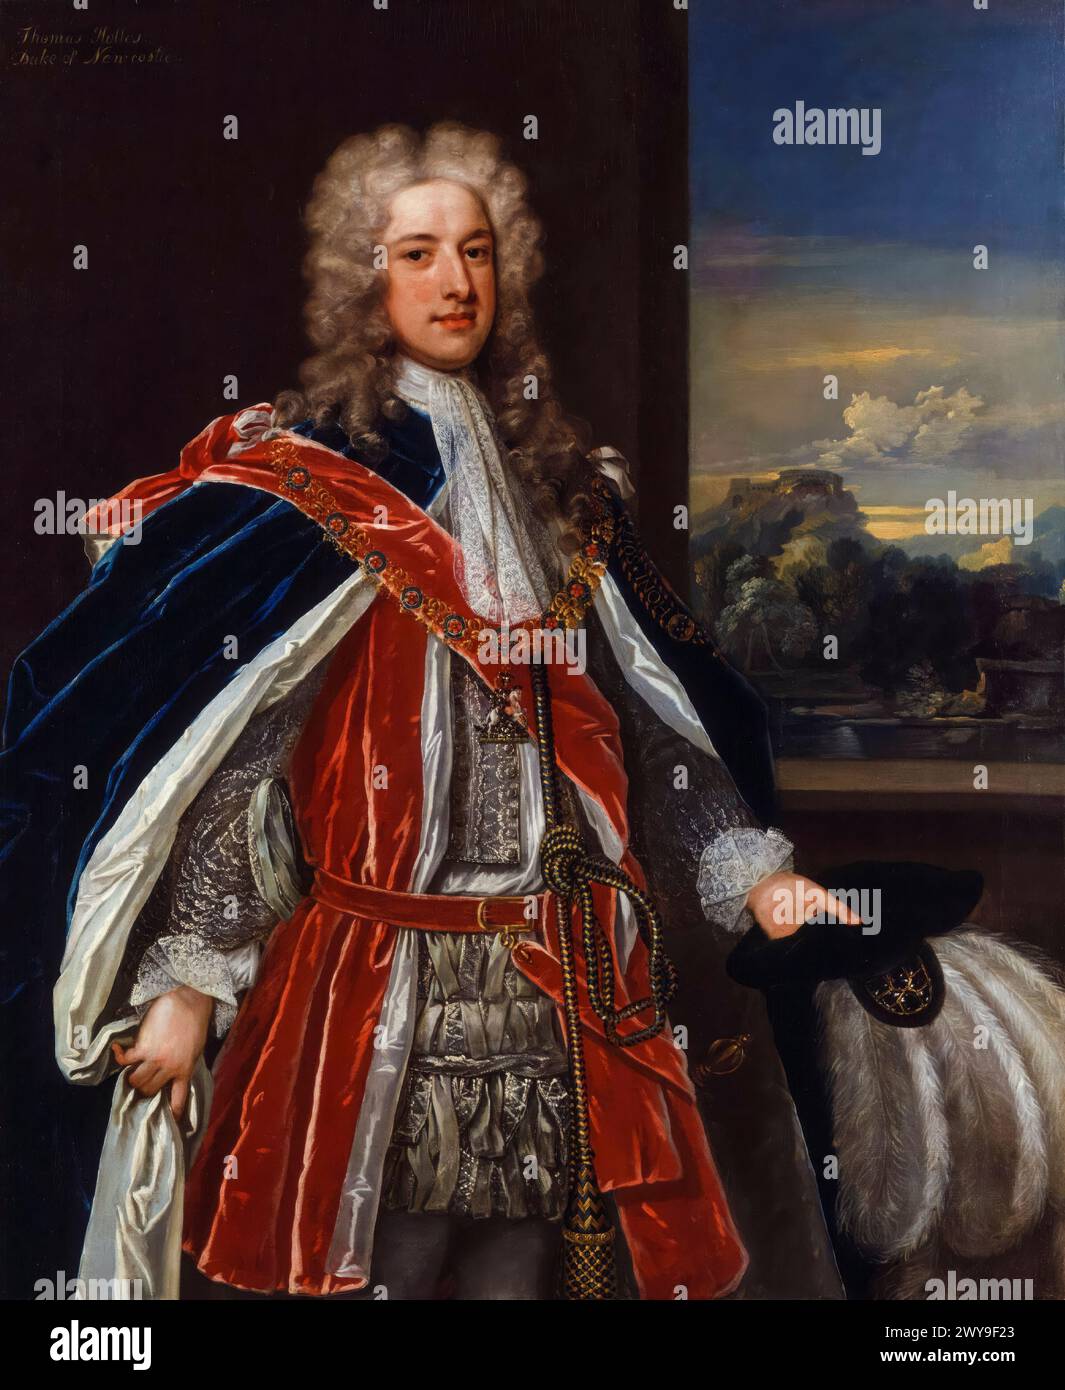 Thomas Pelham-Holles, 1er duc de Newcastle upon Tyne (1693-1768), homme politique whig et premier ministre de Grande-Bretagne à deux reprises de 1754-1756 et 1757-1762, portrait peint à l'huile sur toile par Charles Jervas (attribué), vers 1721 Banque D'Images